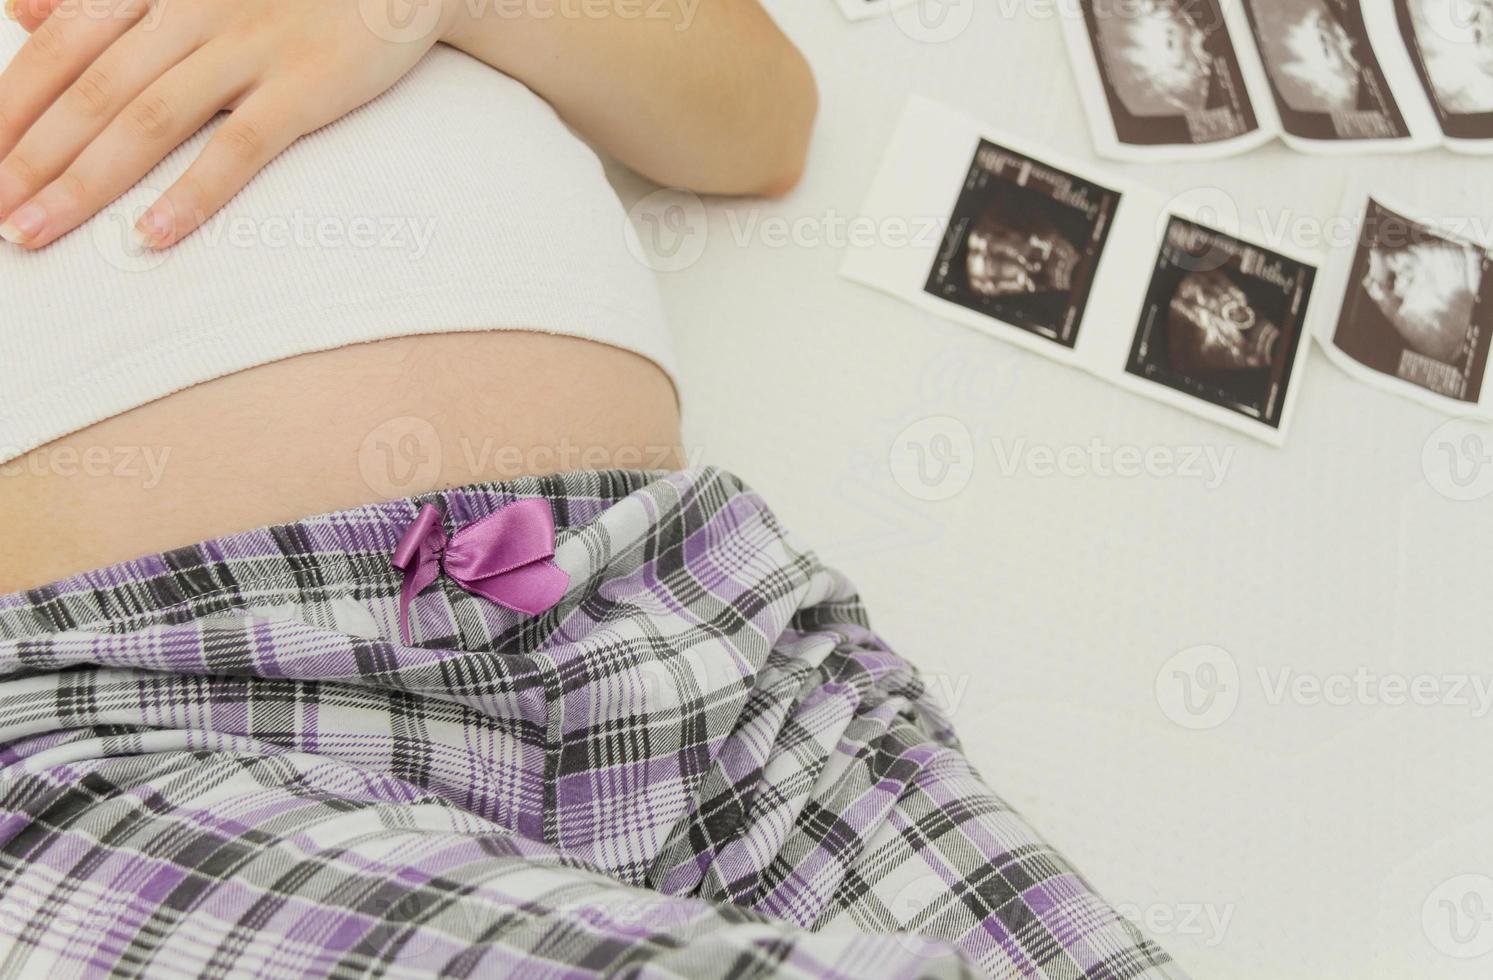 mulher grávida gosta de olhar para ultra-sonografia do bebê foto